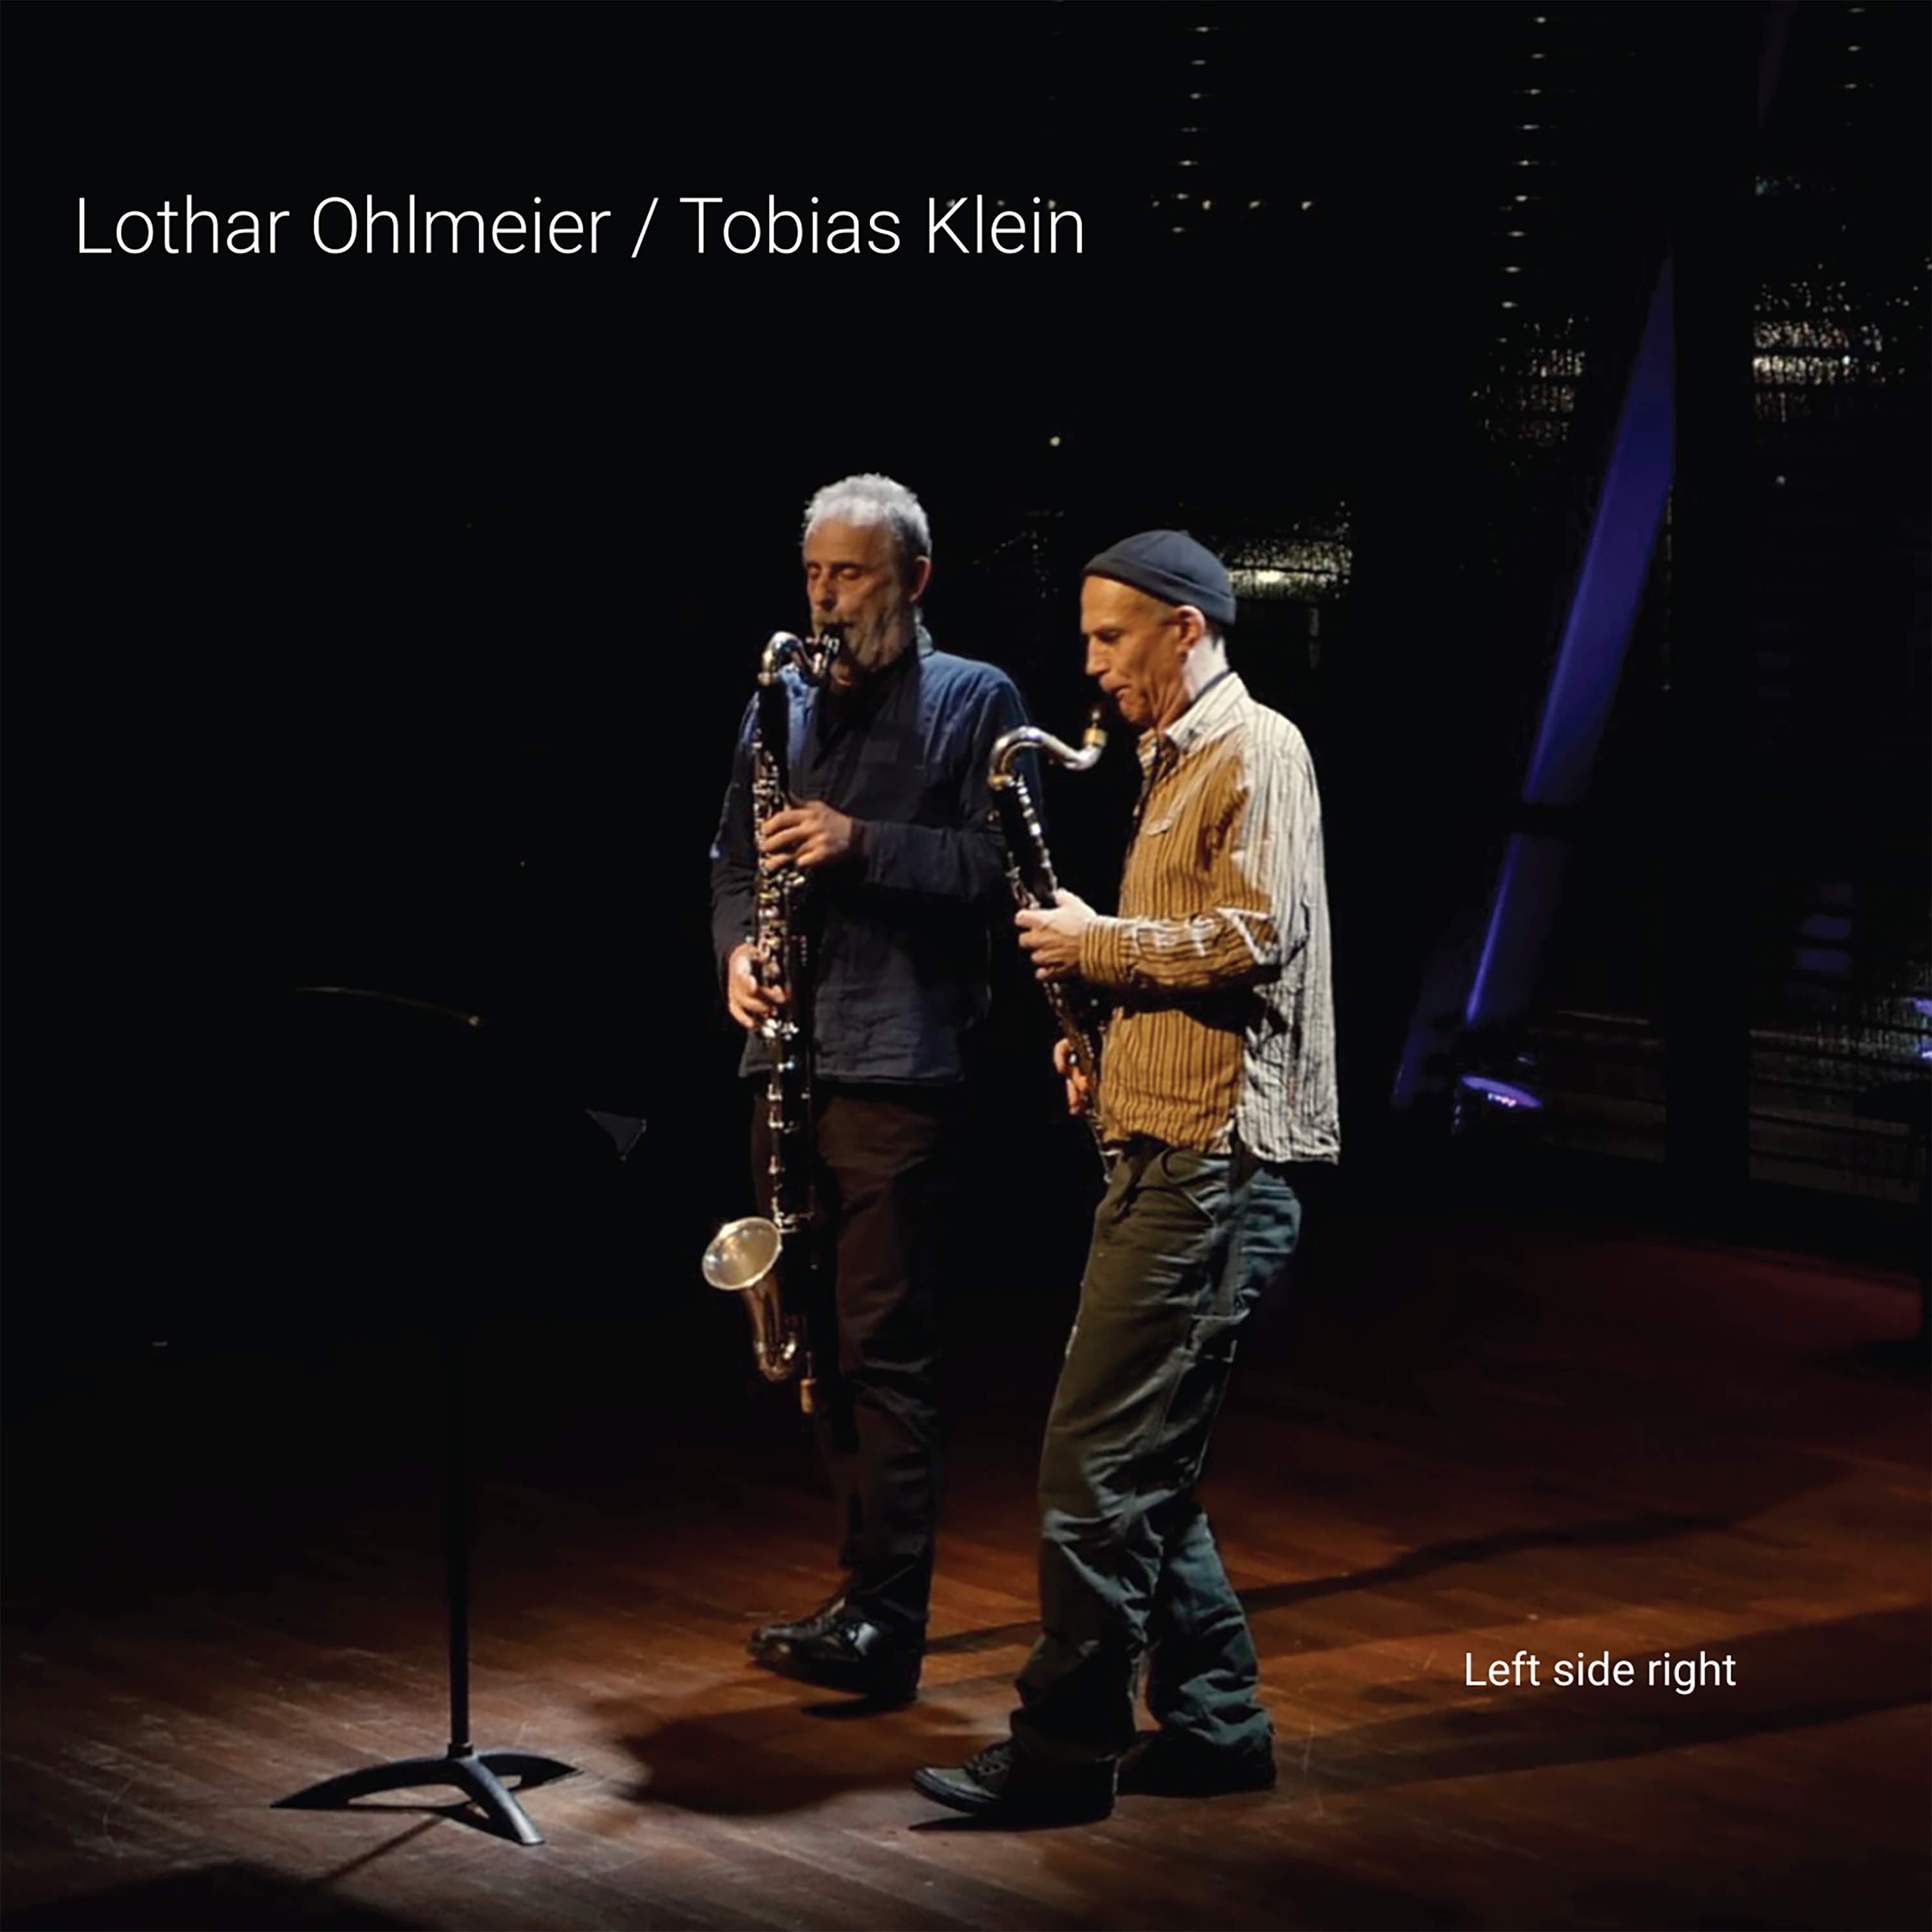 Lothar Ohlmeier / Tobias Klein